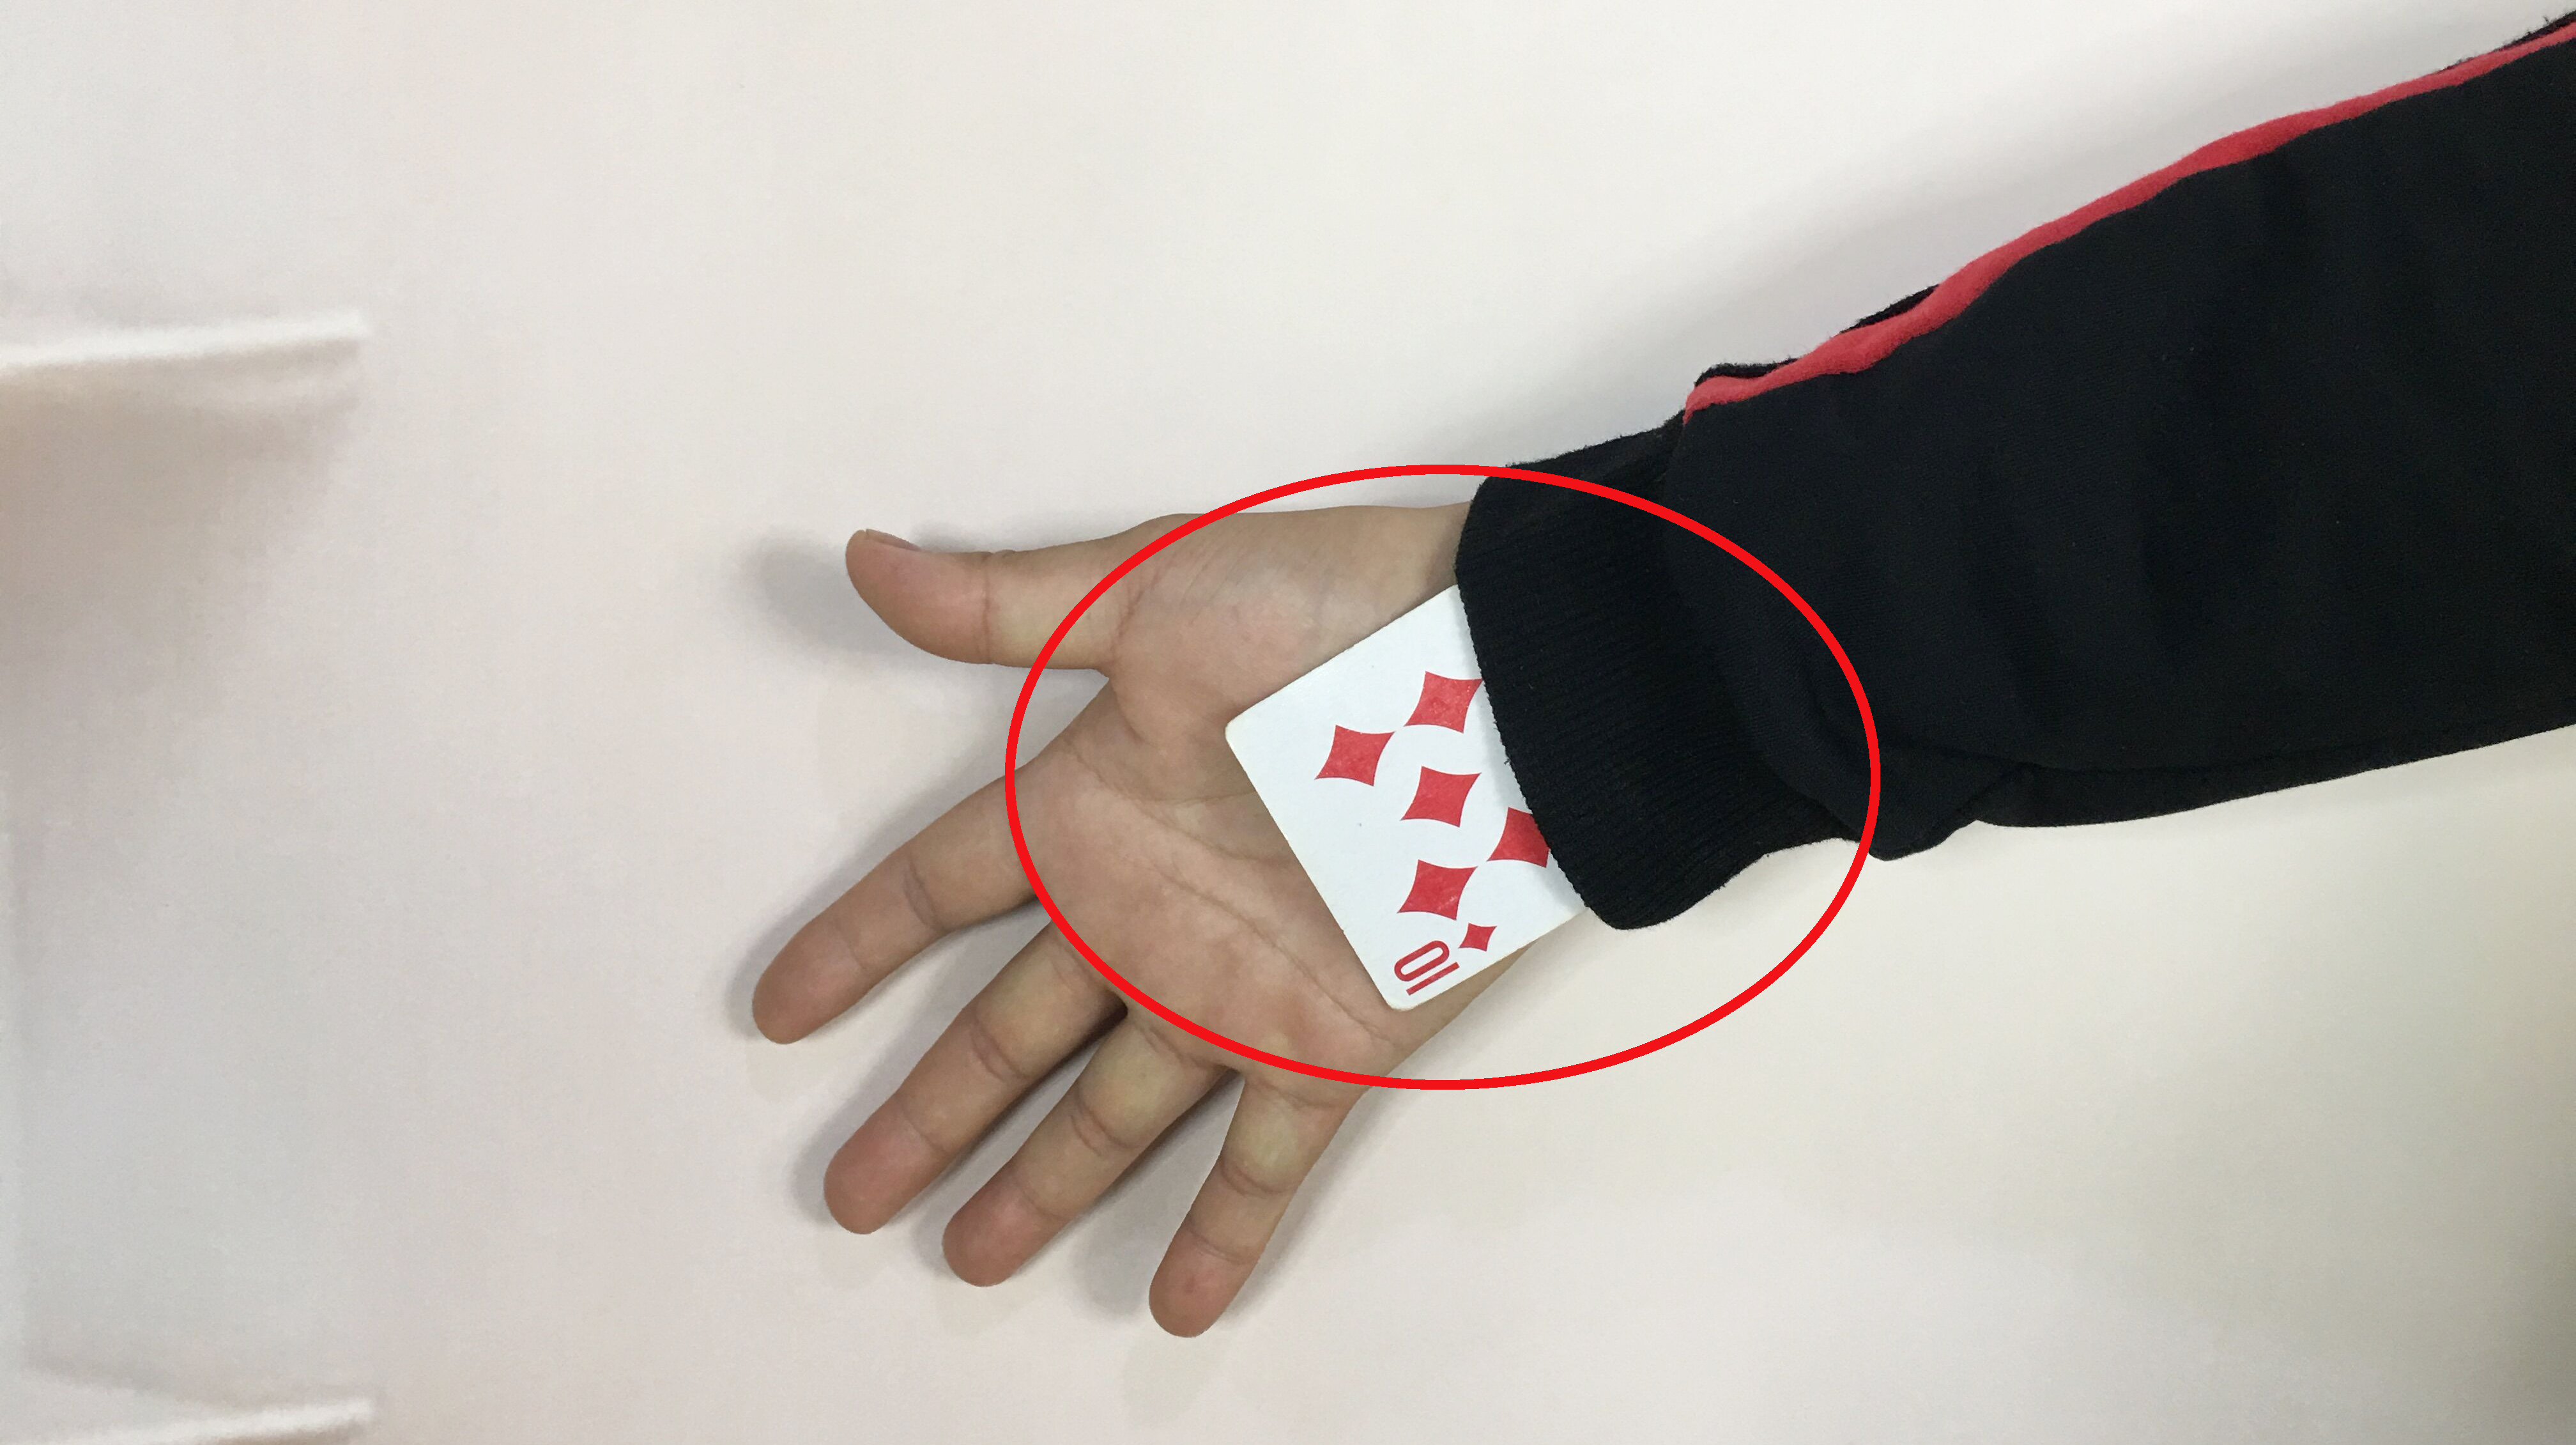 为什么魔术师能把观众的扑克牌,隔空变进袖子里?方法真简单